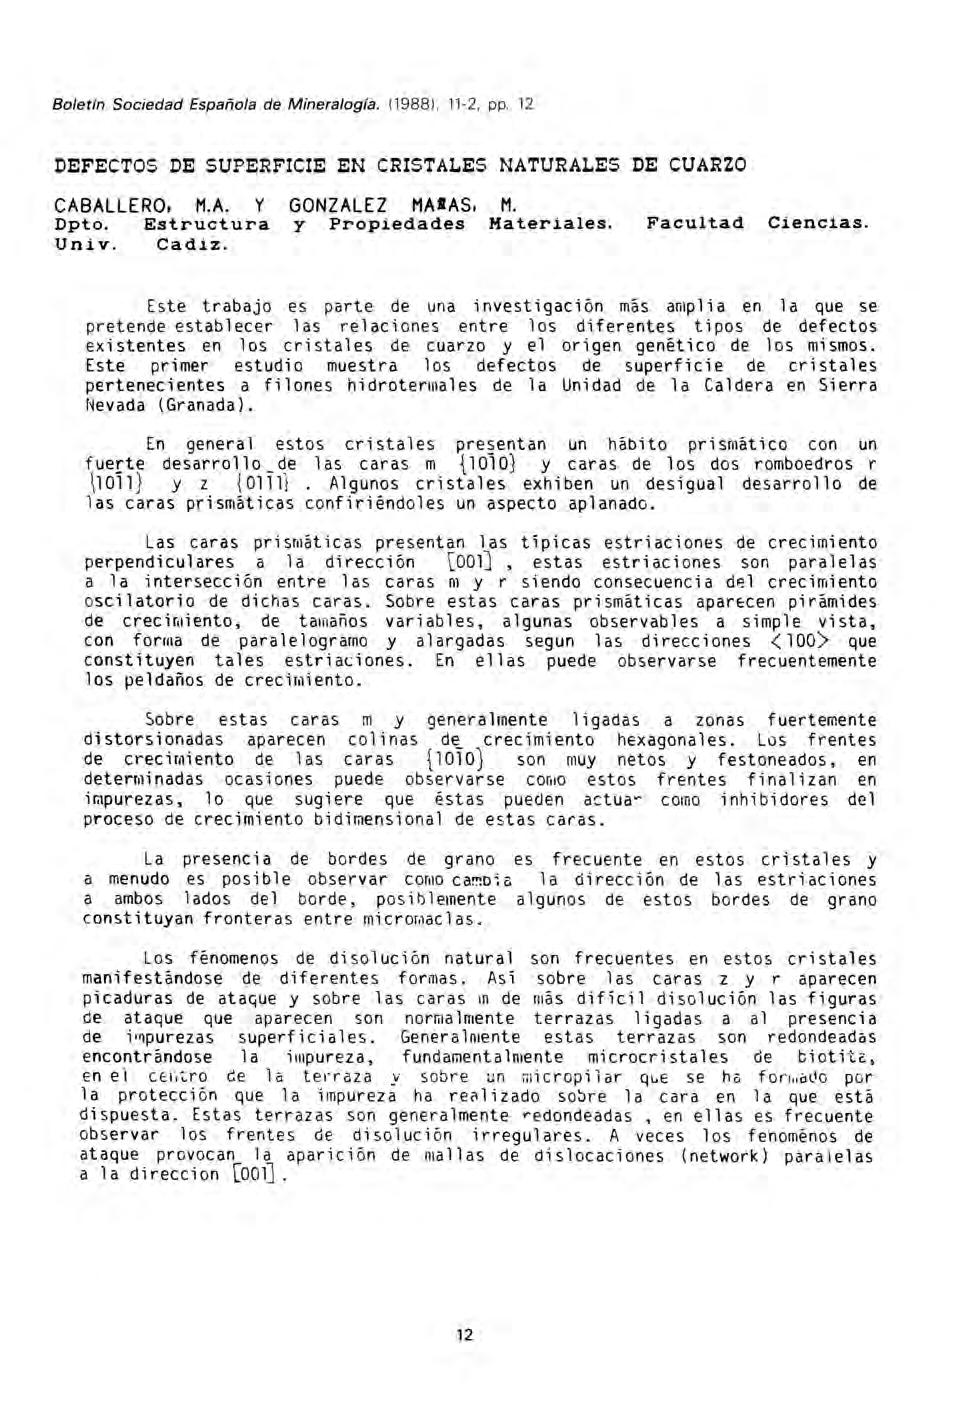 Boletín Sociedad Española de Mineralogía. (1988), 11-2, pp. 12 DEFECTOS DE SUPERFICIE EN CRISTALES NATURALES DE CUARZO CABALLERO, M.A. Y GONZALEZ MASAS, M. Dpto. Estructura y Propiedades Materiales.